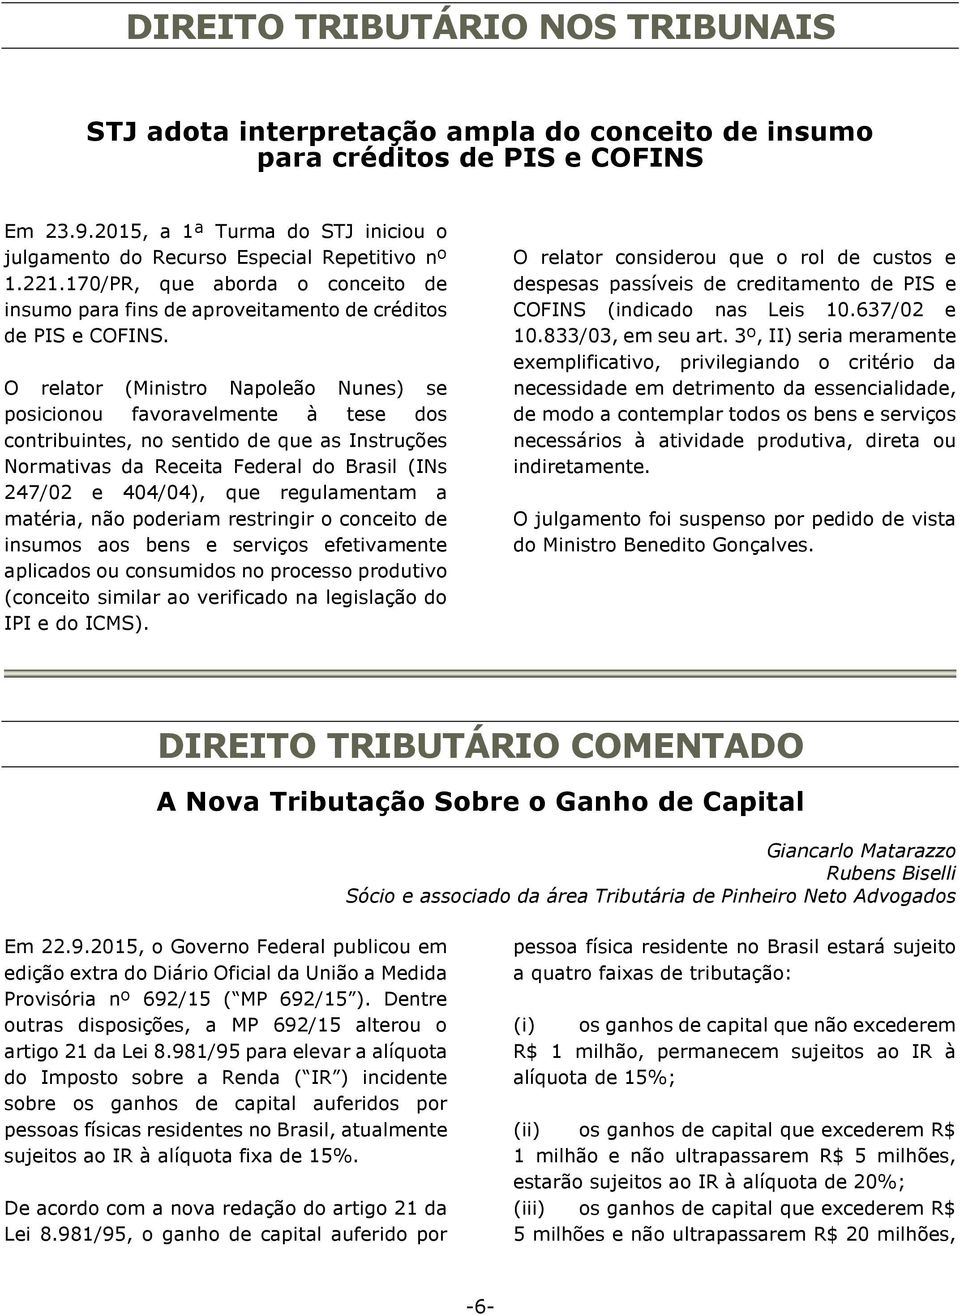 O relator (Ministro Napoleão Nunes) se posicionou favoravelmente à tese dos contribuintes, no sentido de que as Instruções Normativas da Receita Federal do Brasil (INs 247/02 e 404/04), que